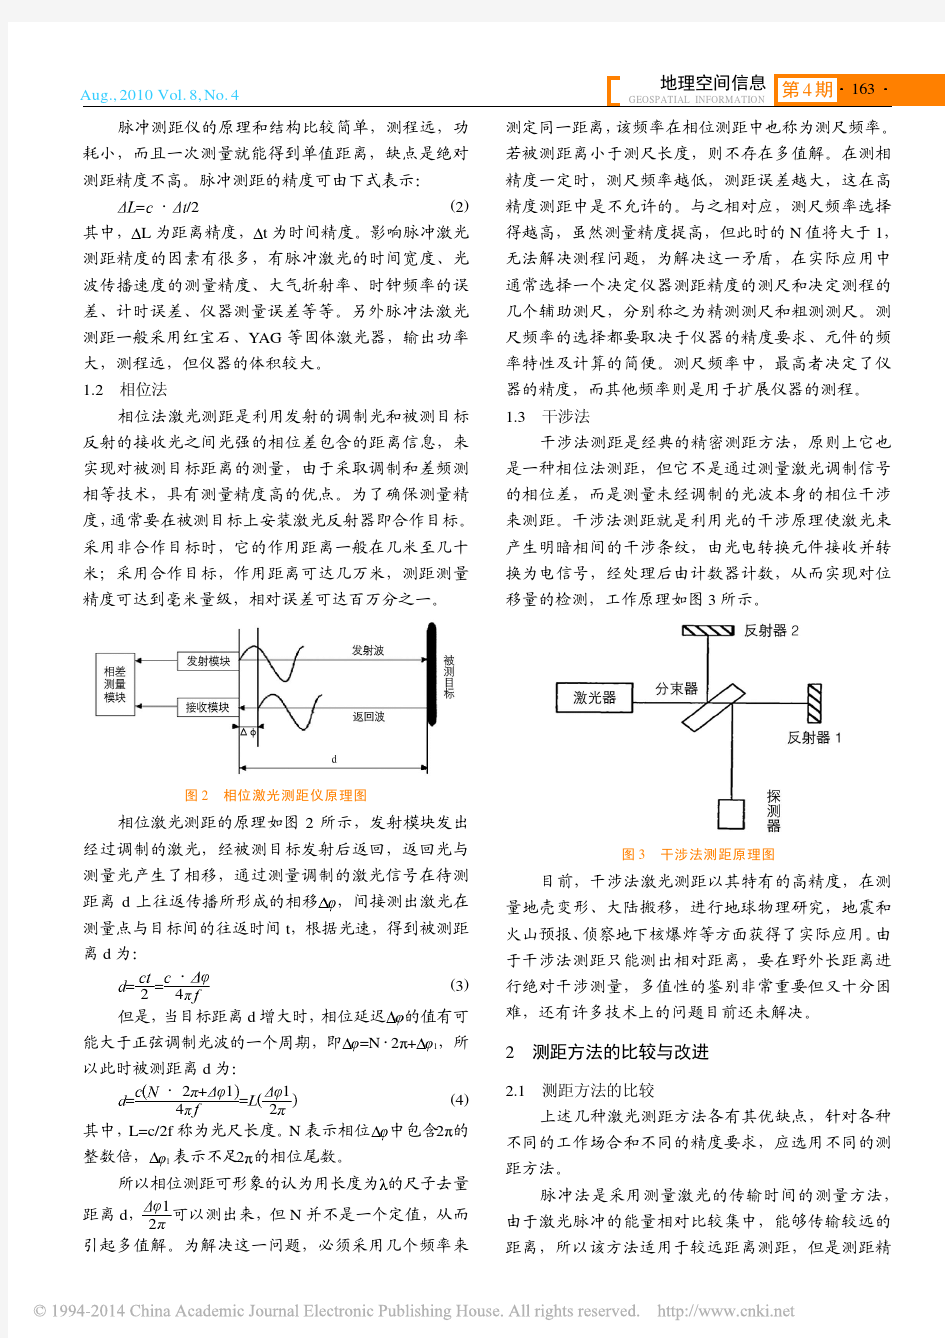 激光测距方法探讨_肖彬 (1)